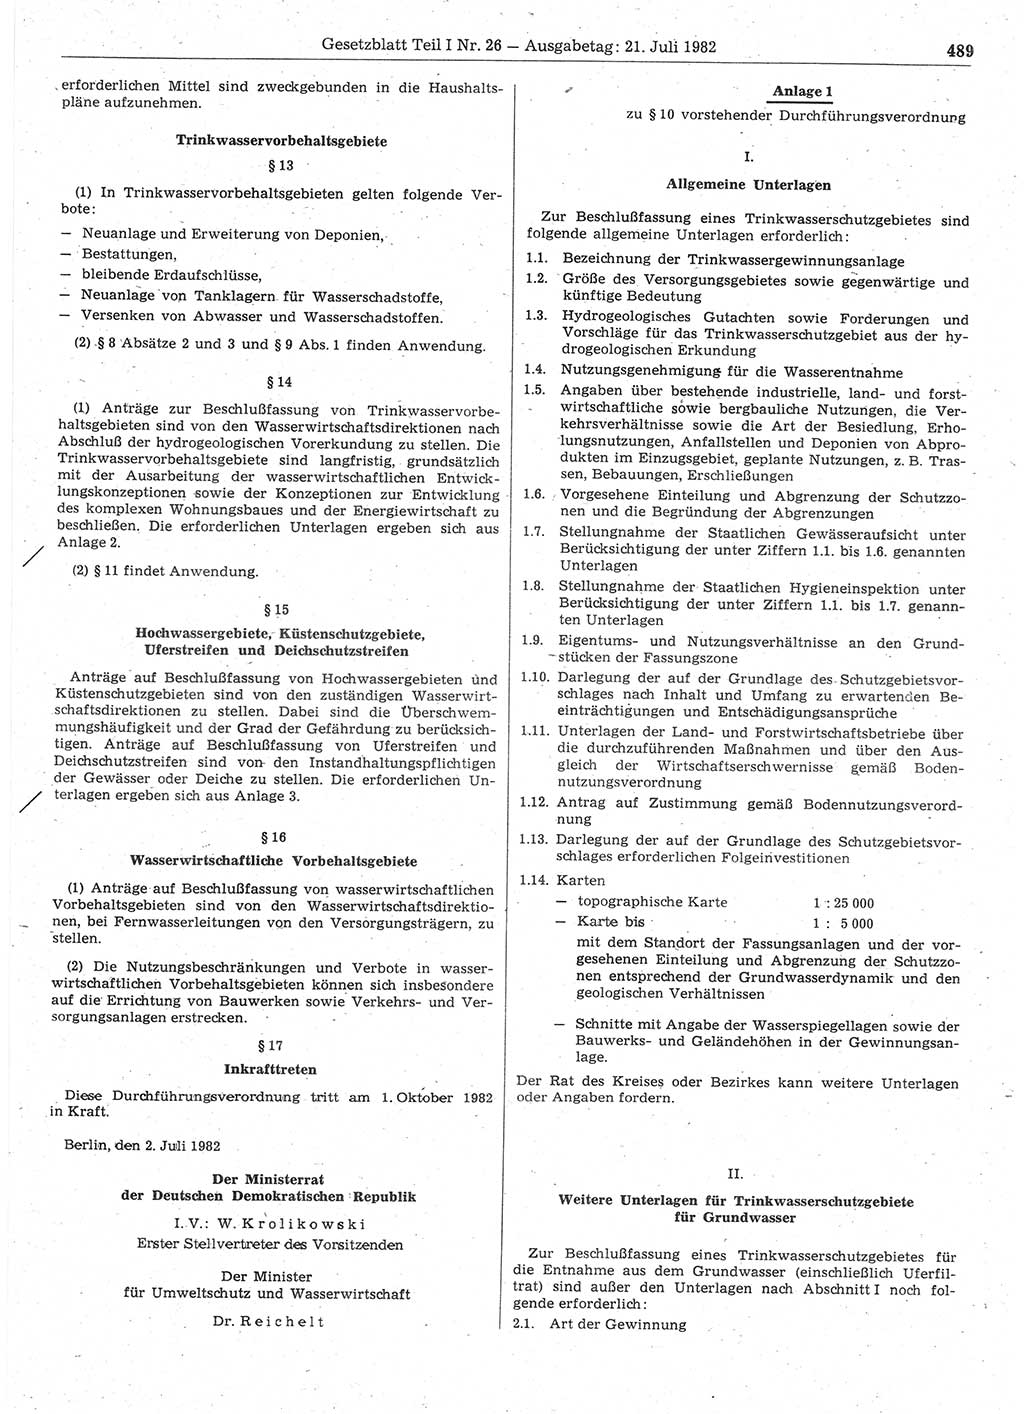 Gesetzblatt (GBl.) der Deutschen Demokratischen Republik (DDR) Teil Ⅰ 1982, Seite 489 (GBl. DDR Ⅰ 1982, S. 489)